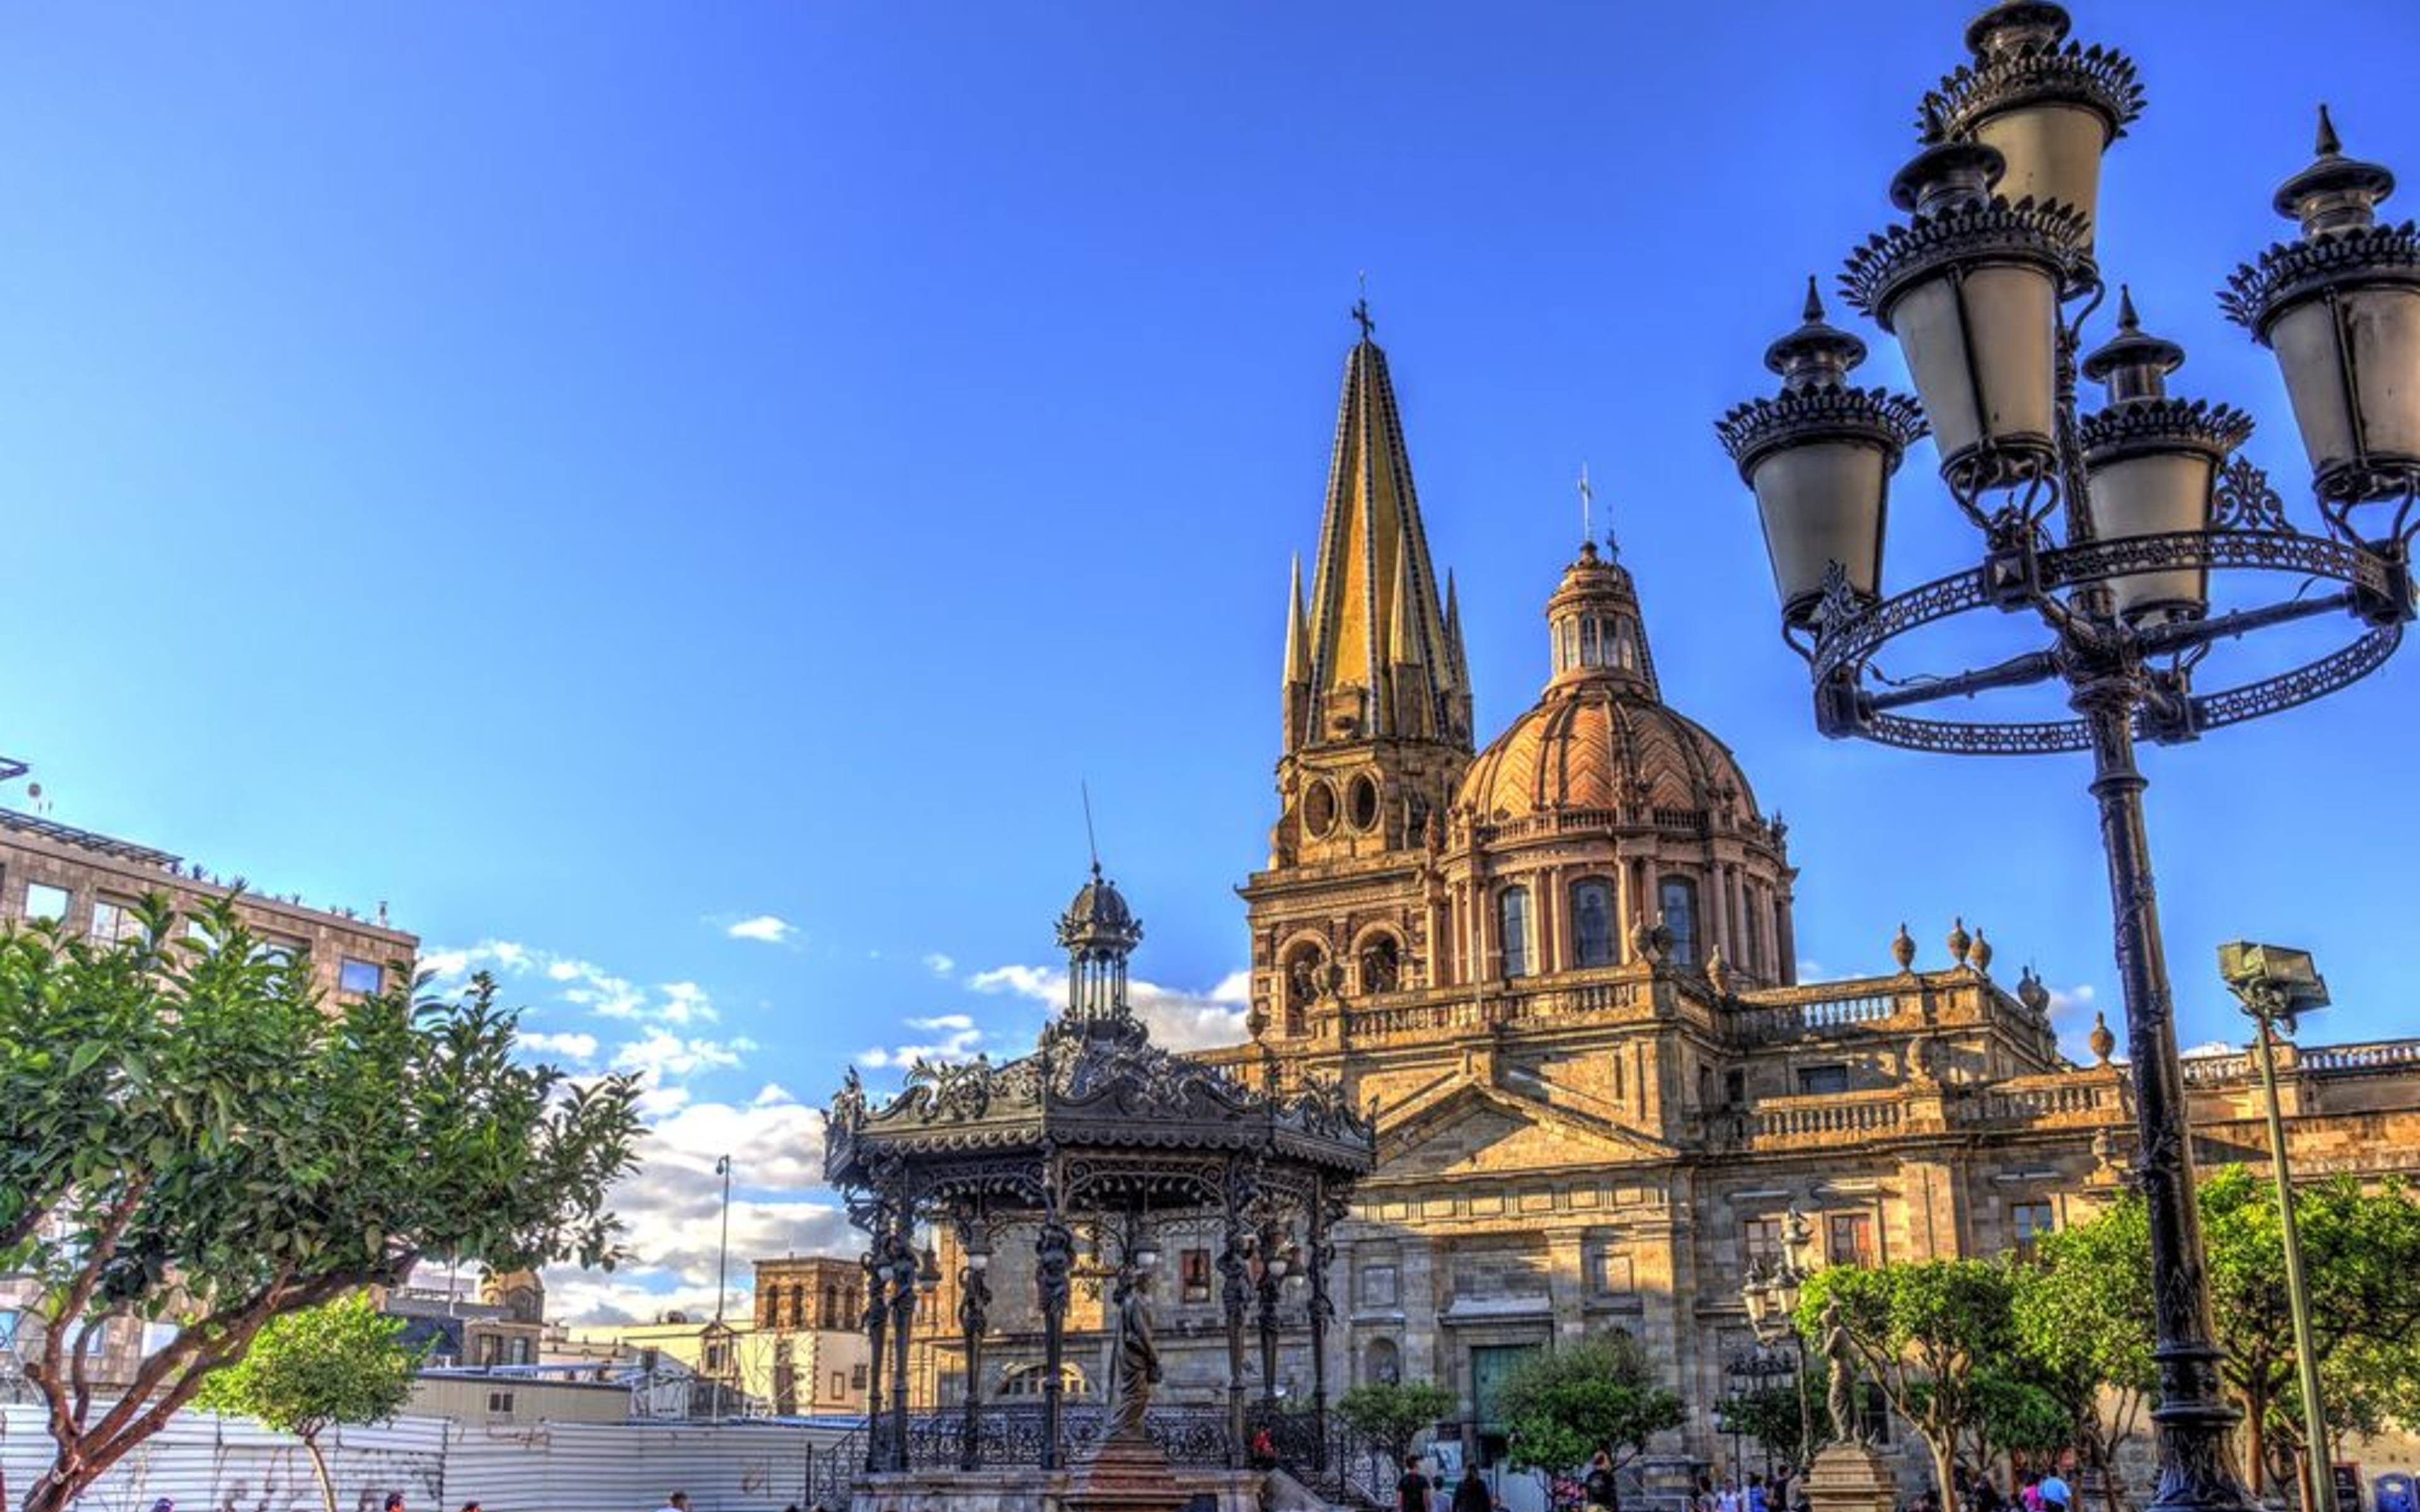 Malerische Dörfchen und Weiterreise nach Guadalajara